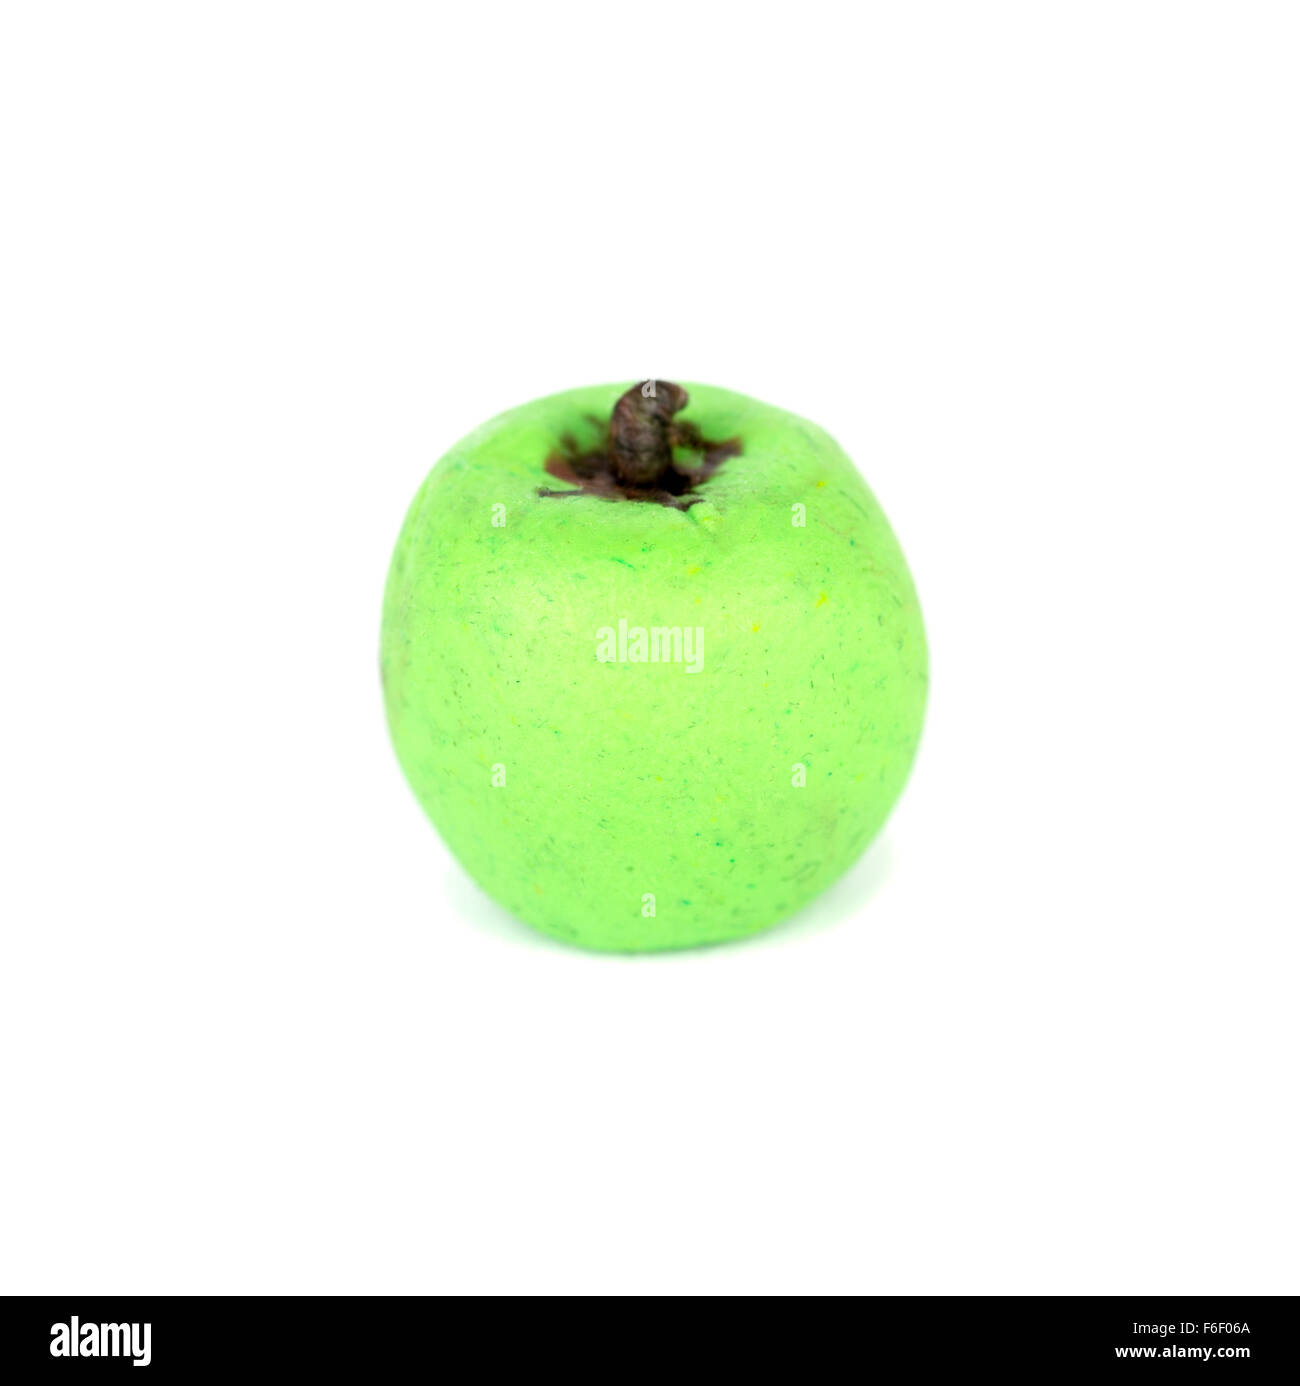 Hecho a mano la plastilina o arcilla para modelar la figura de una manzana verde sobre fondo blanco. Foto de stock